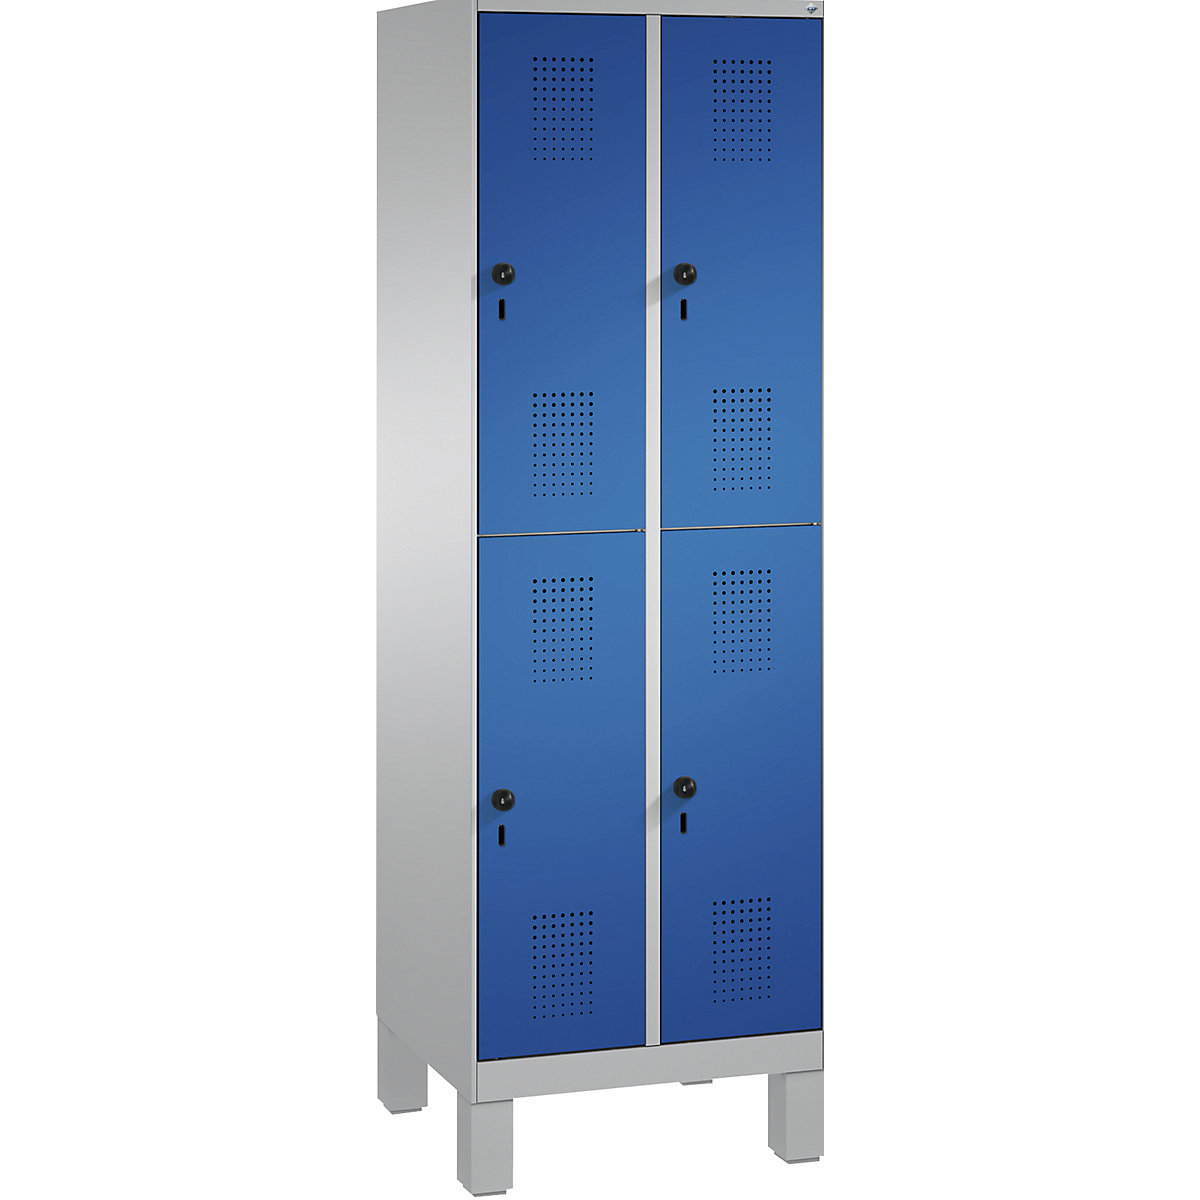 Penderie sur pieds EVOLO à deux étages – C+P, 2 compartiments, 2 casiers chacun, largeur compartiments 300 mm, aluminium / bleu gentiane-8